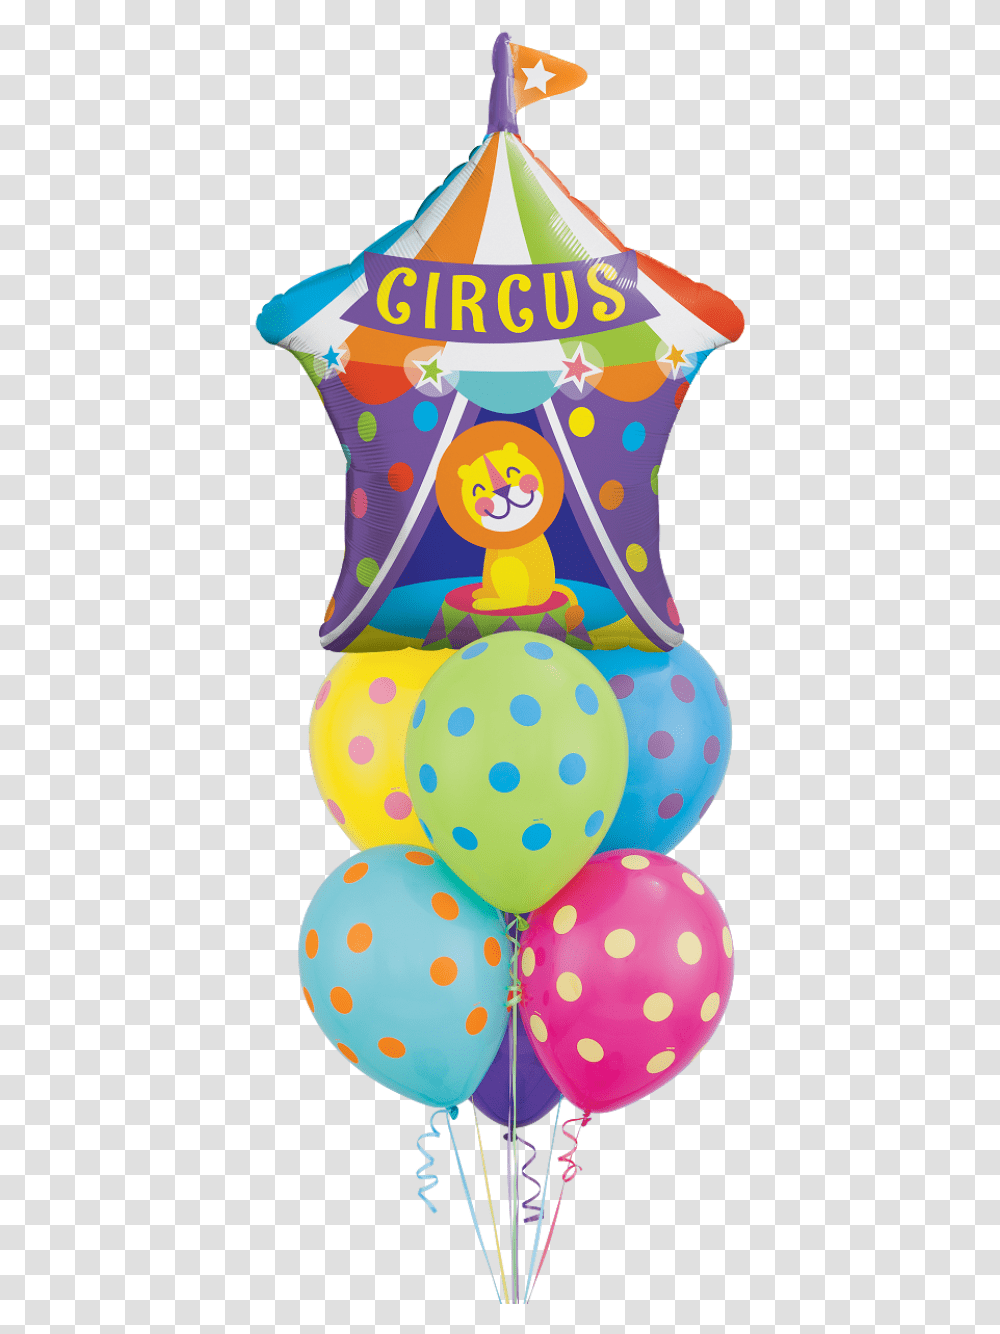 Circus Lion Circus, Ball, Balloon, Texture, Polka Dot Transparent Png